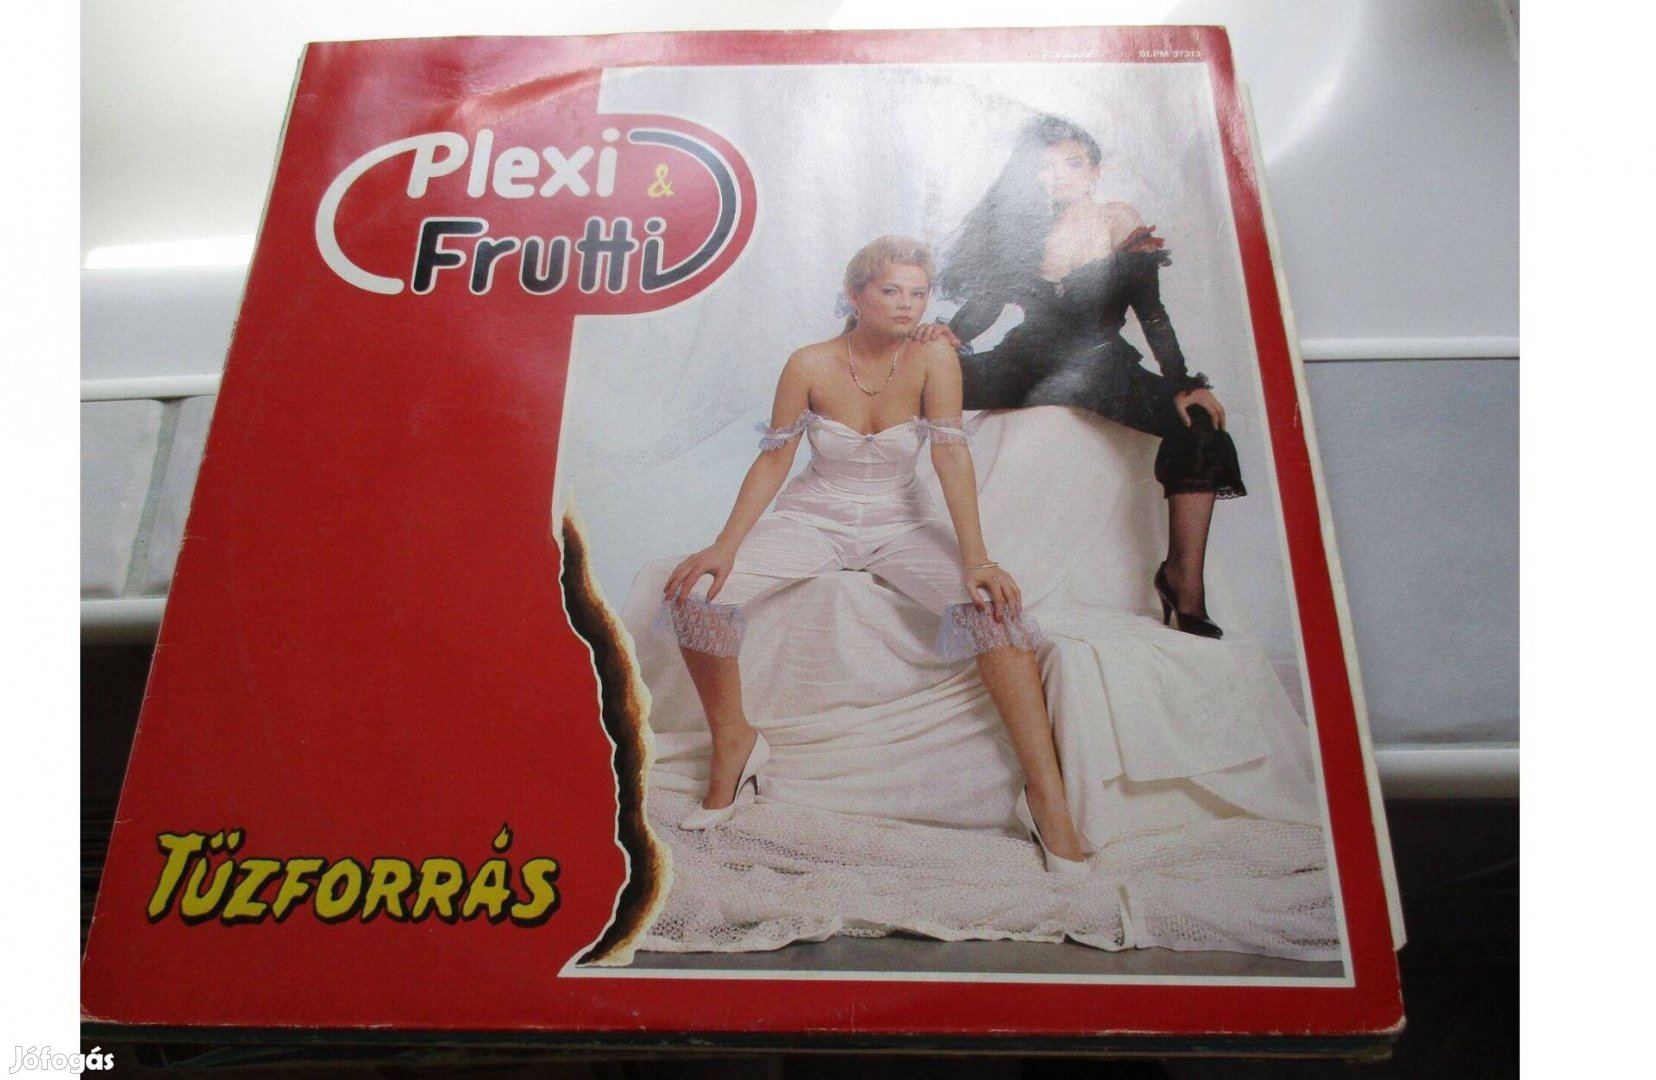 Plexi & Frutti bakelit hanglemez eladó